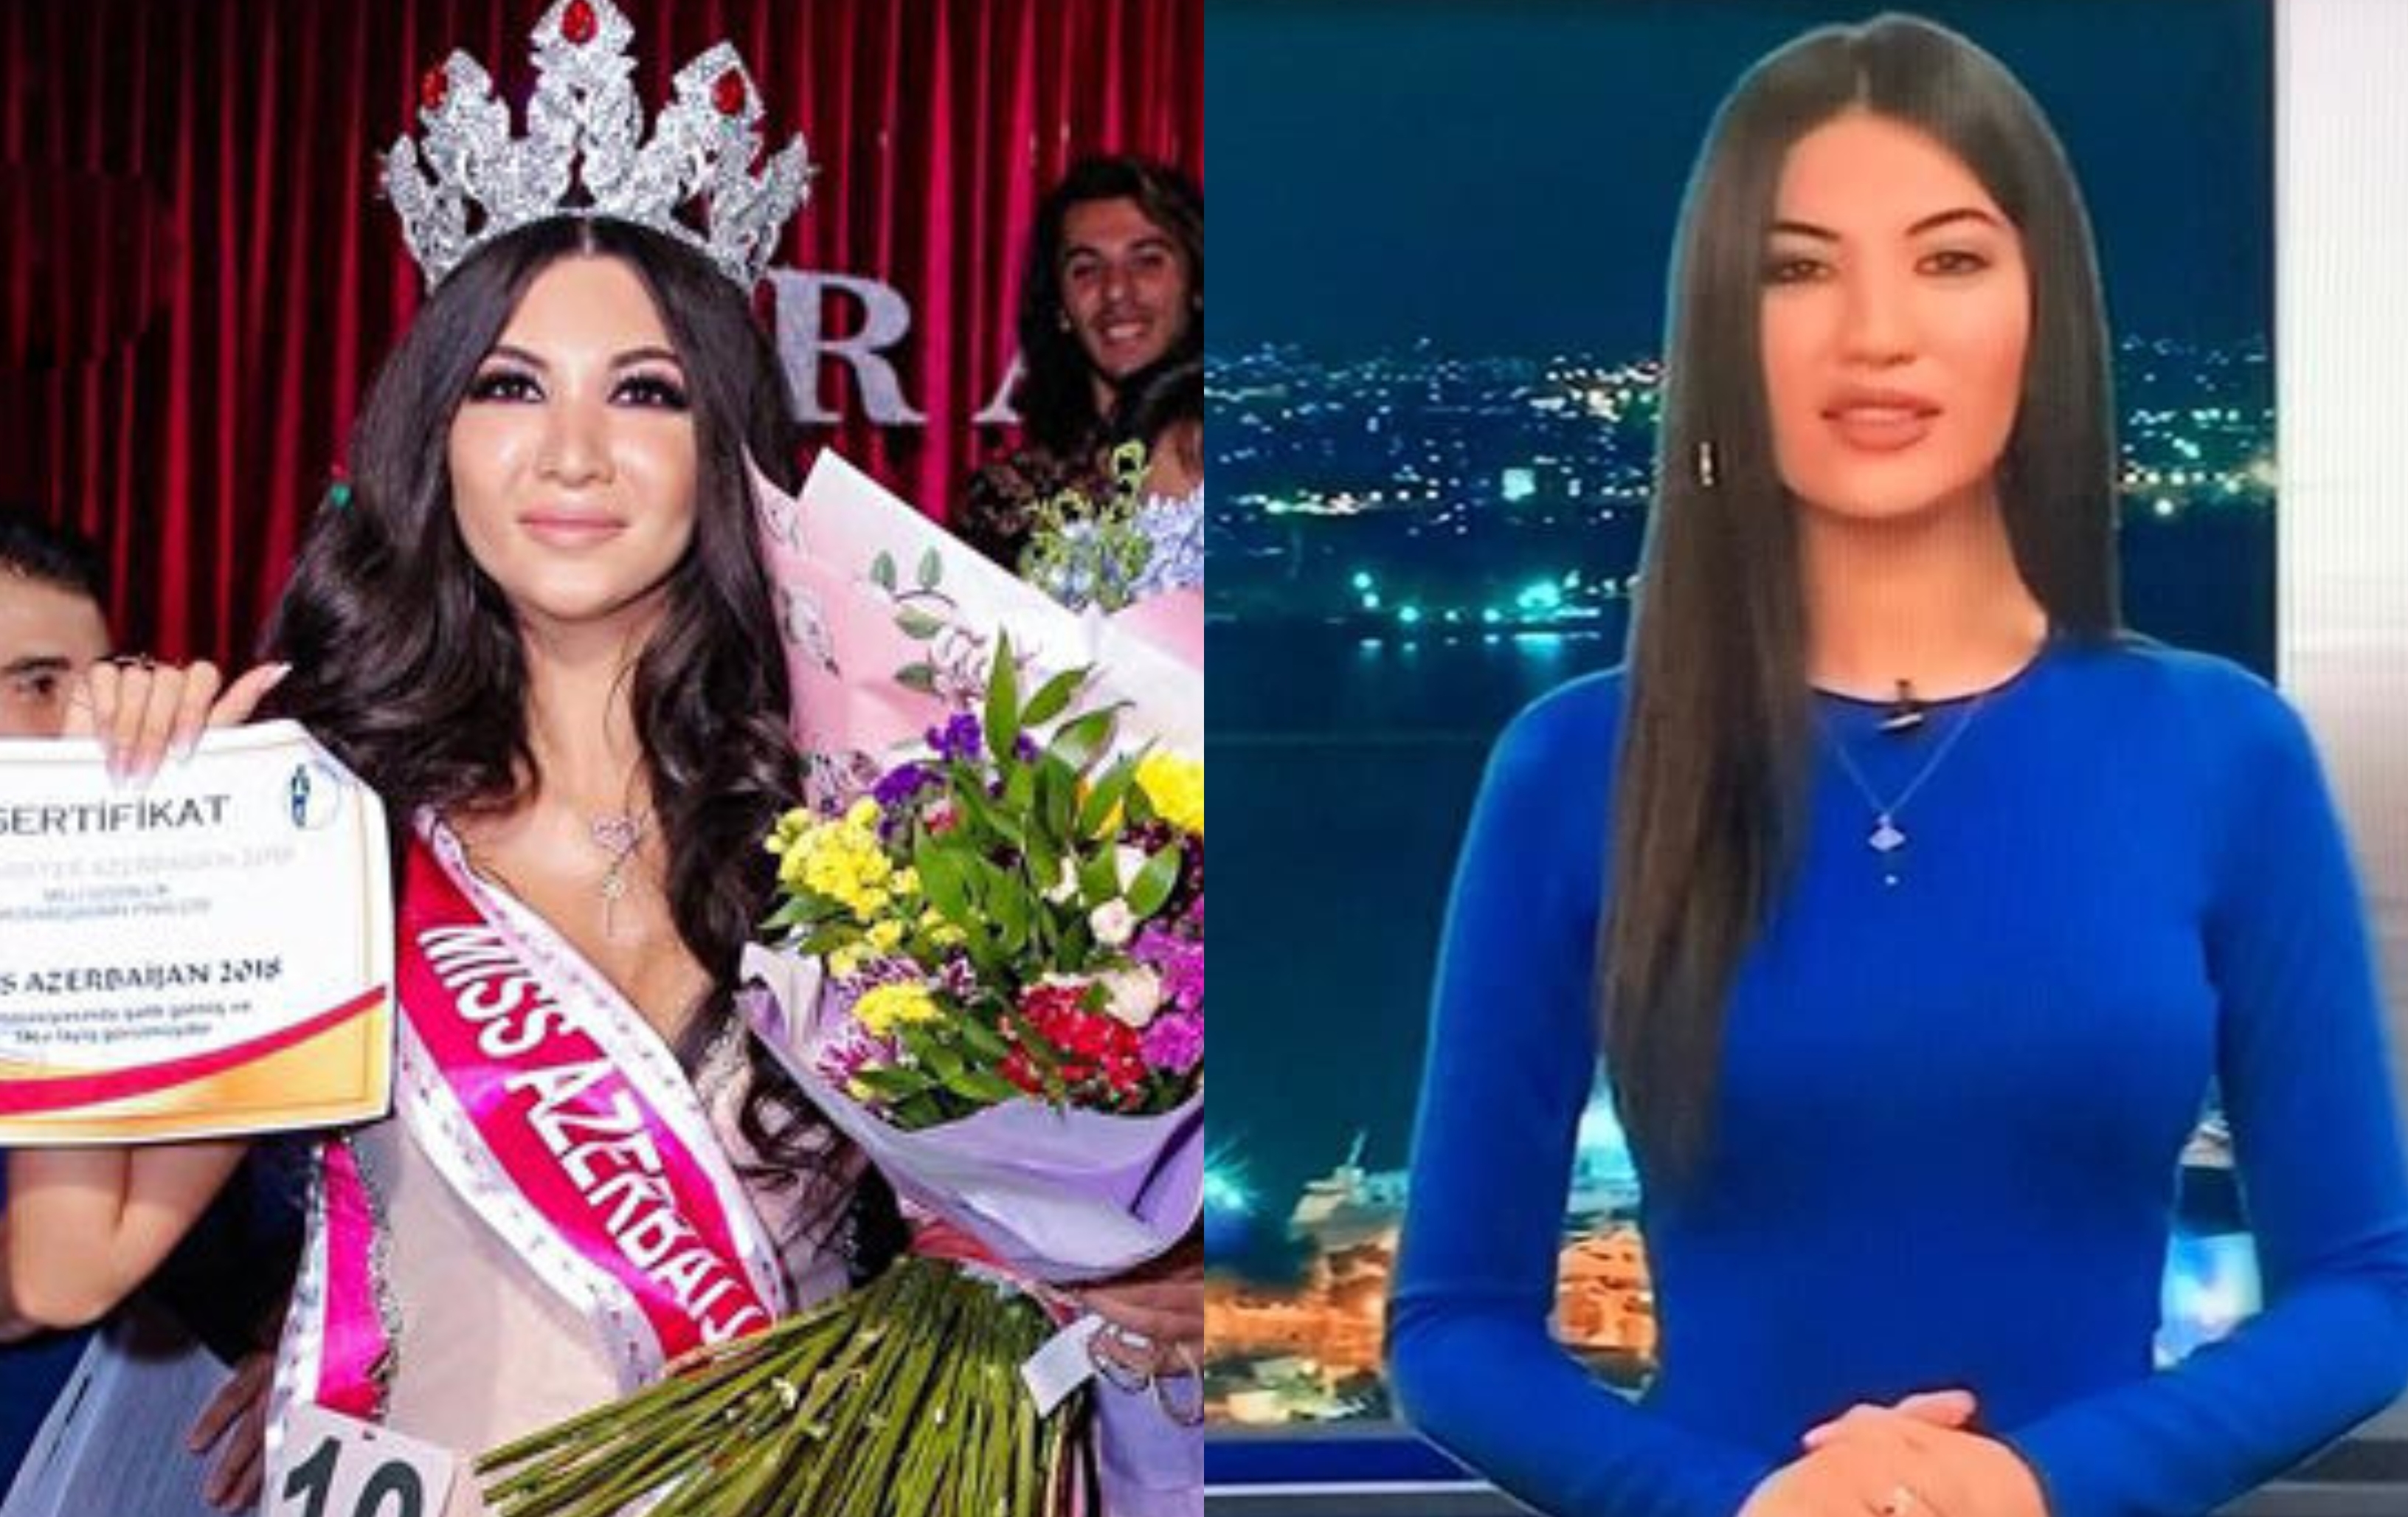 "Miss Azərbaycan-2018"i ən gözəl aparıcı adlandırdılar